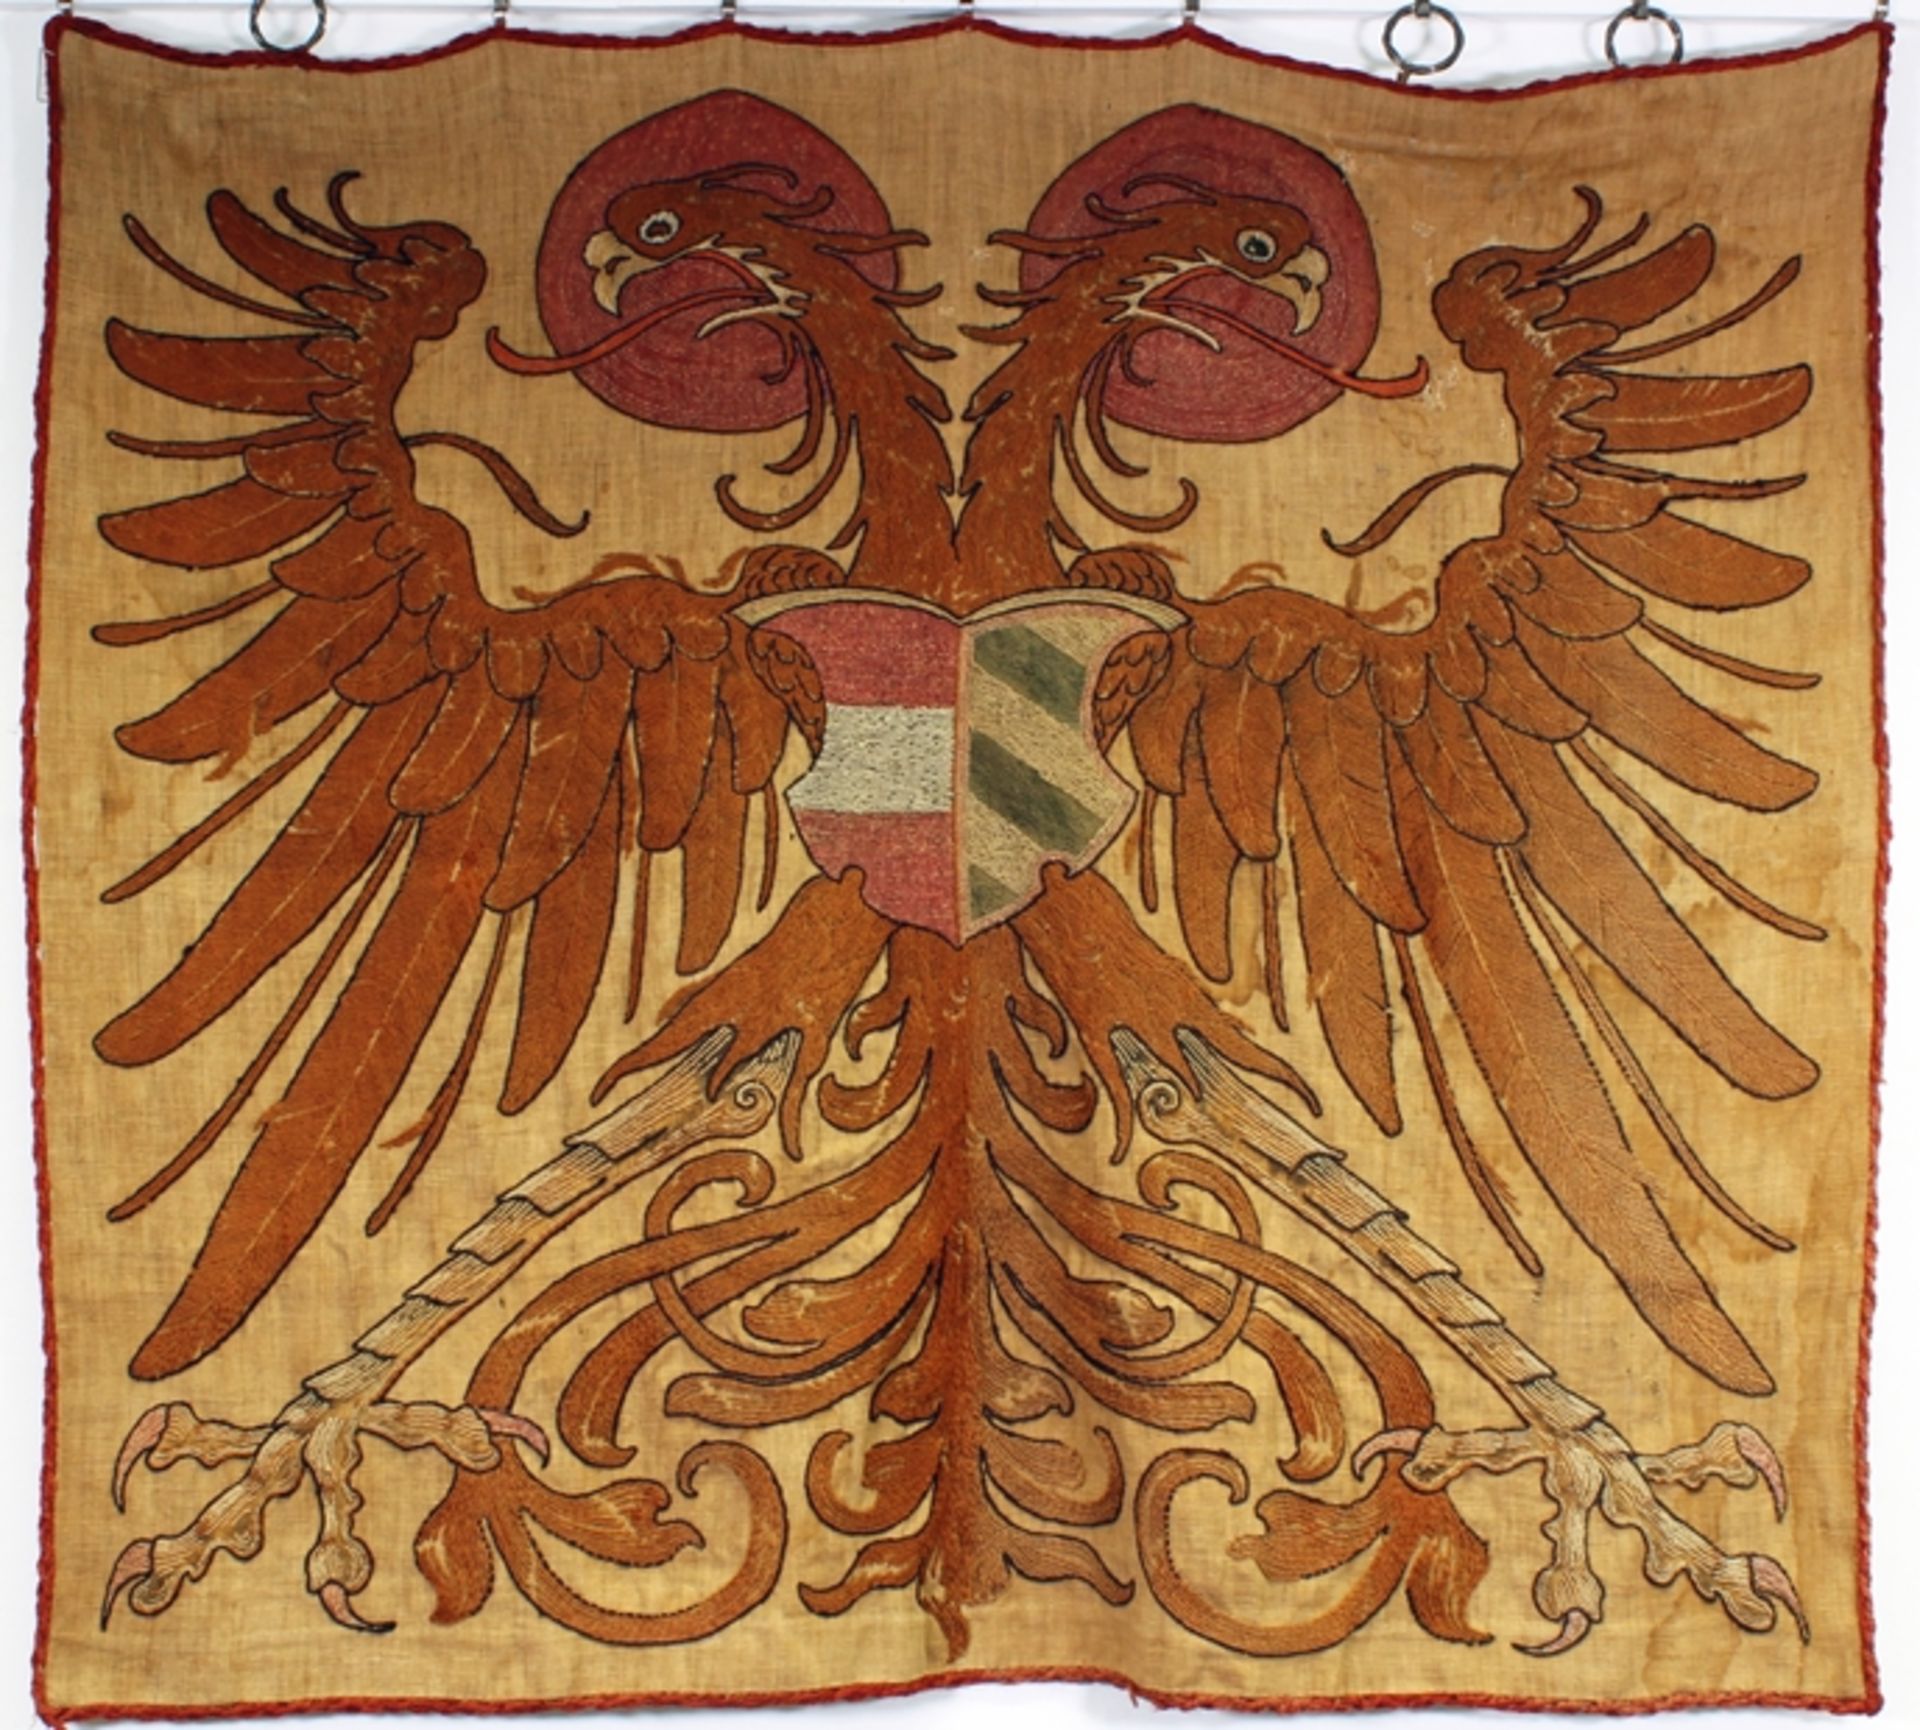 Wandbehang, 18./19. Jh., Wappen Kaiser Maximilian I. HRR (1459 - 1519), nimbierter Deutscher Doppe